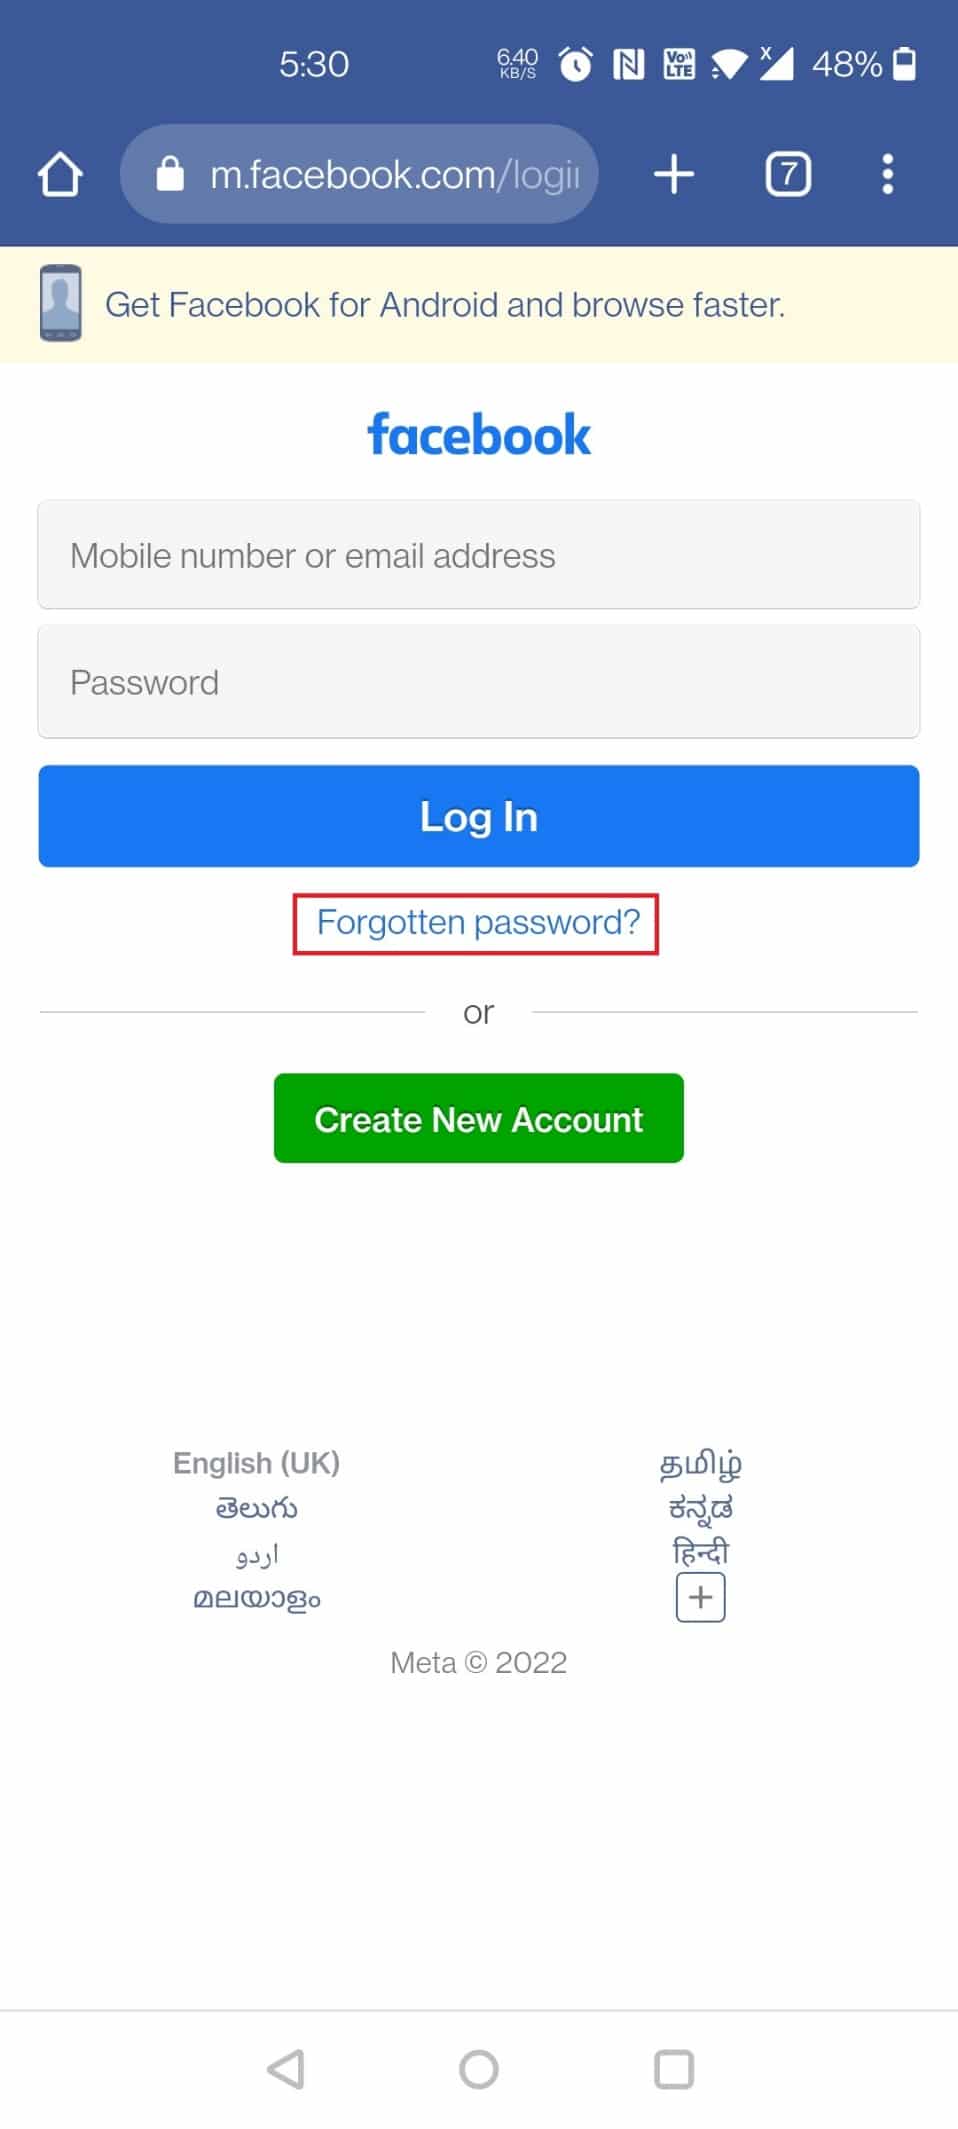 Tap on Forgotten password